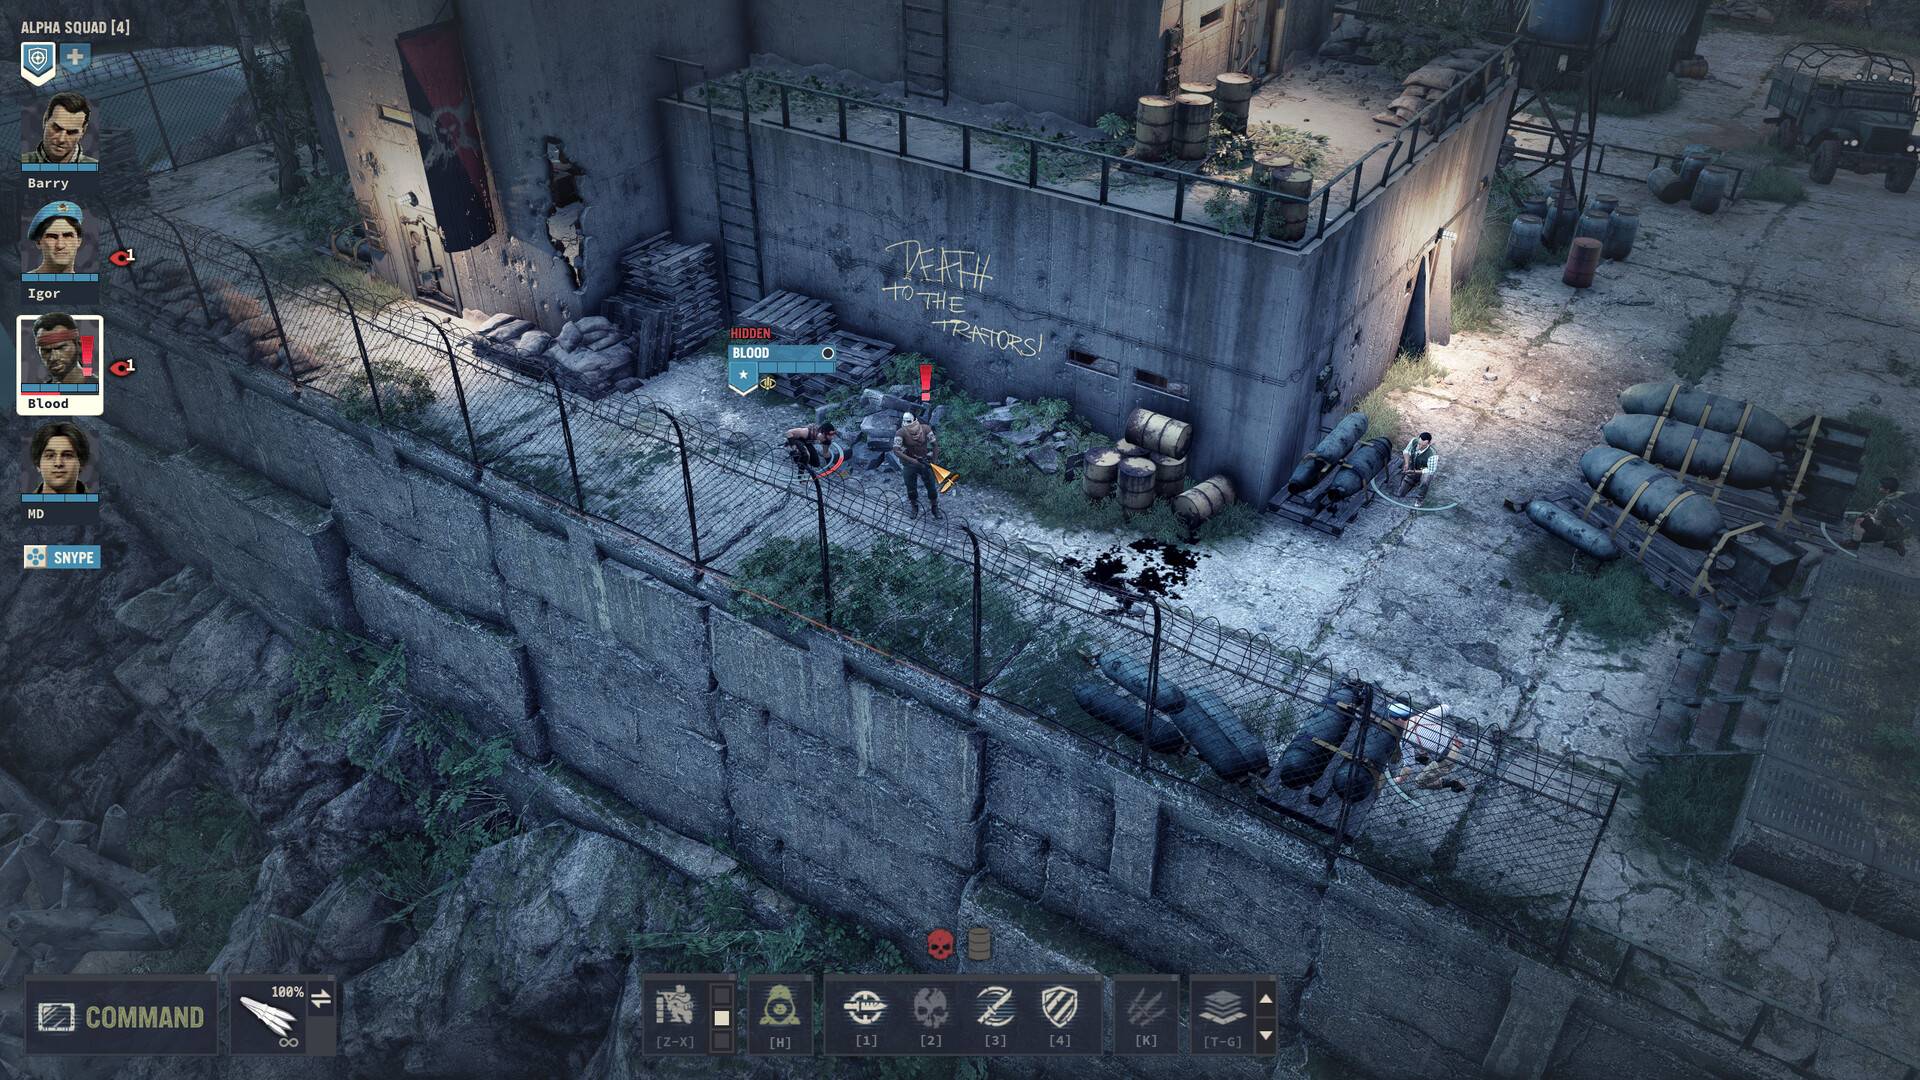 回合制战术游戏《铁血联盟3》宣布将与 7 月 14 日登陆 PC 平台发售！